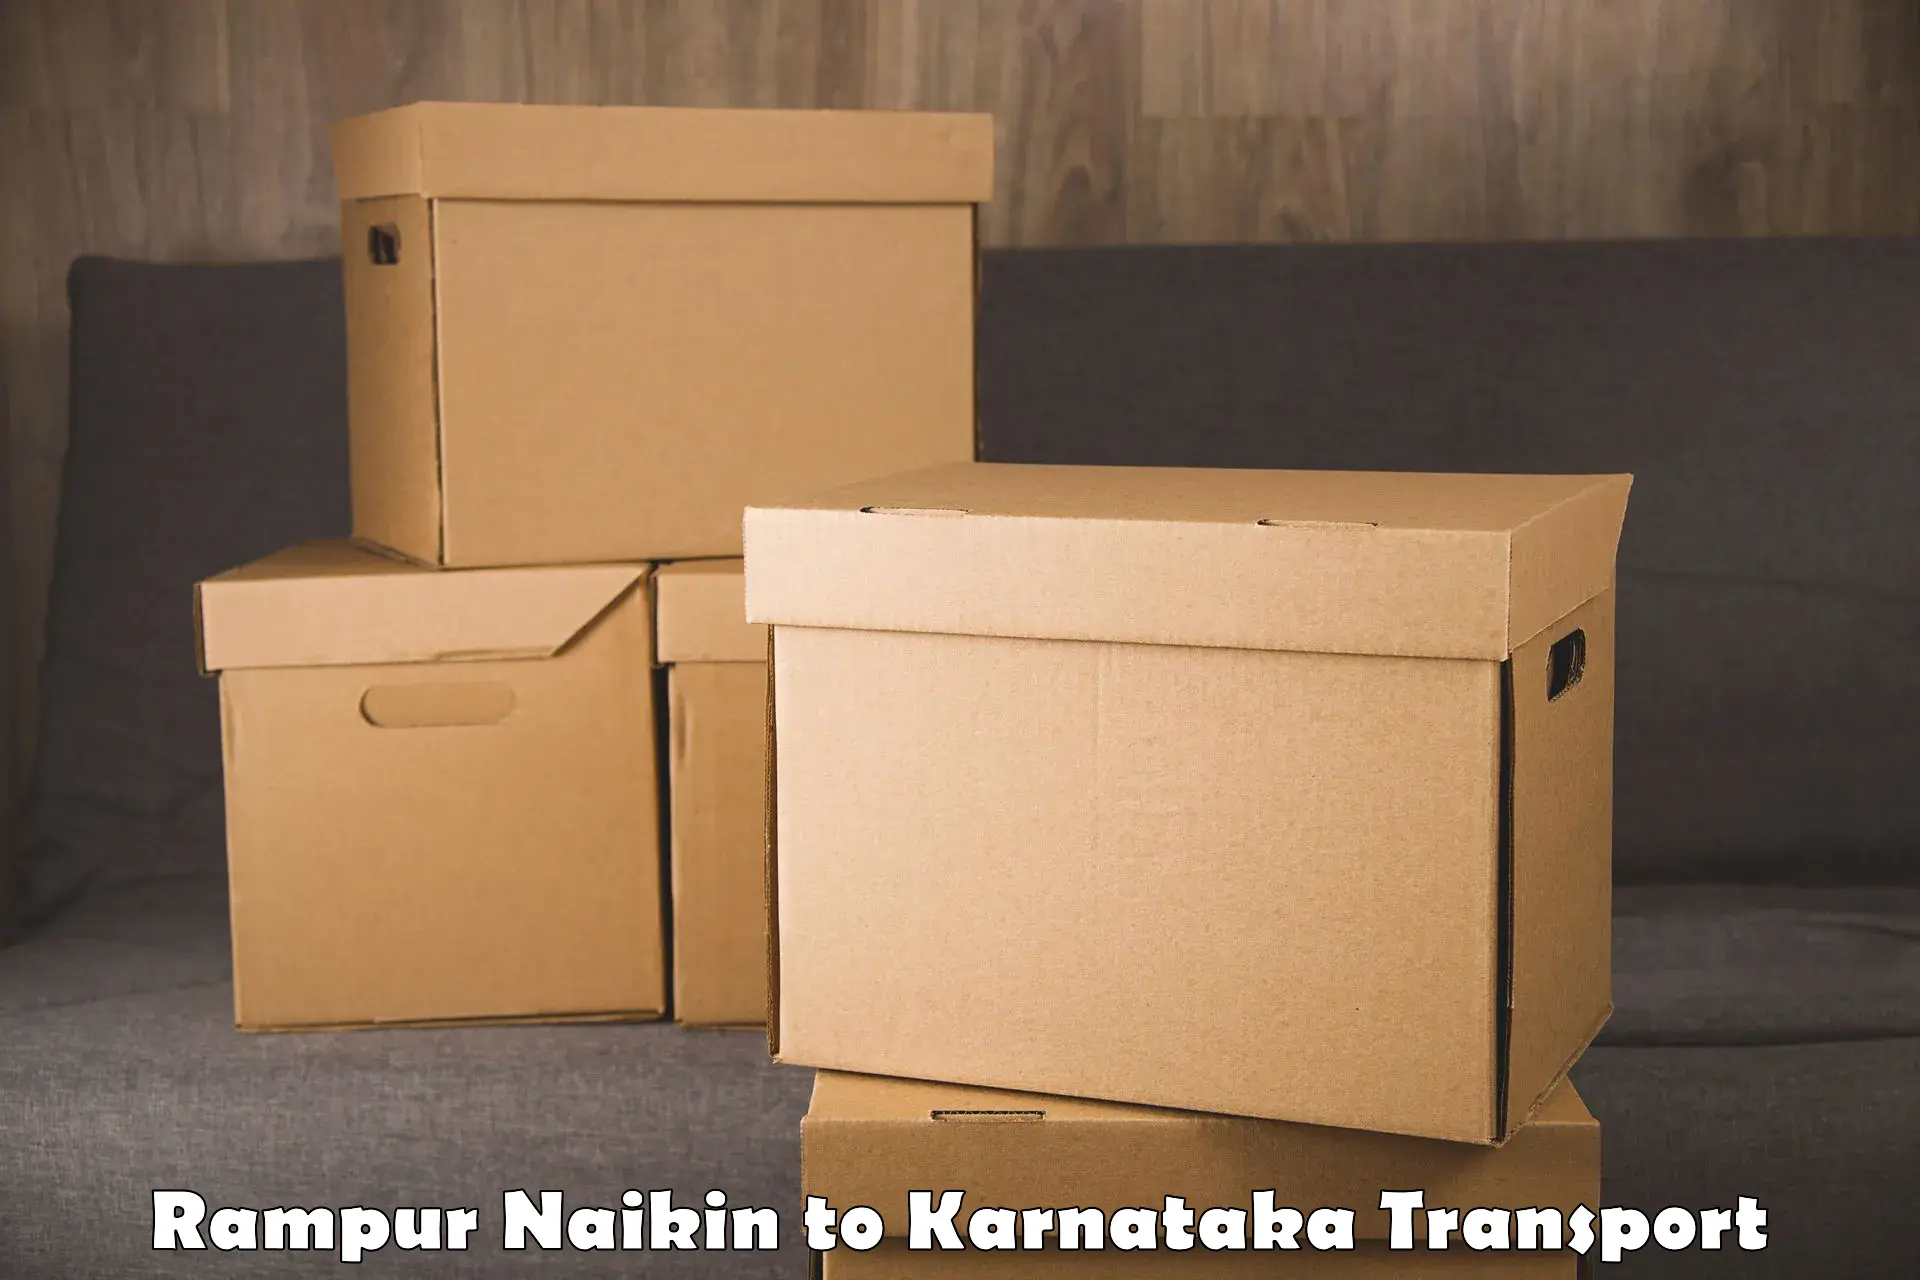 Road transport online services Rampur Naikin to Hiriyur